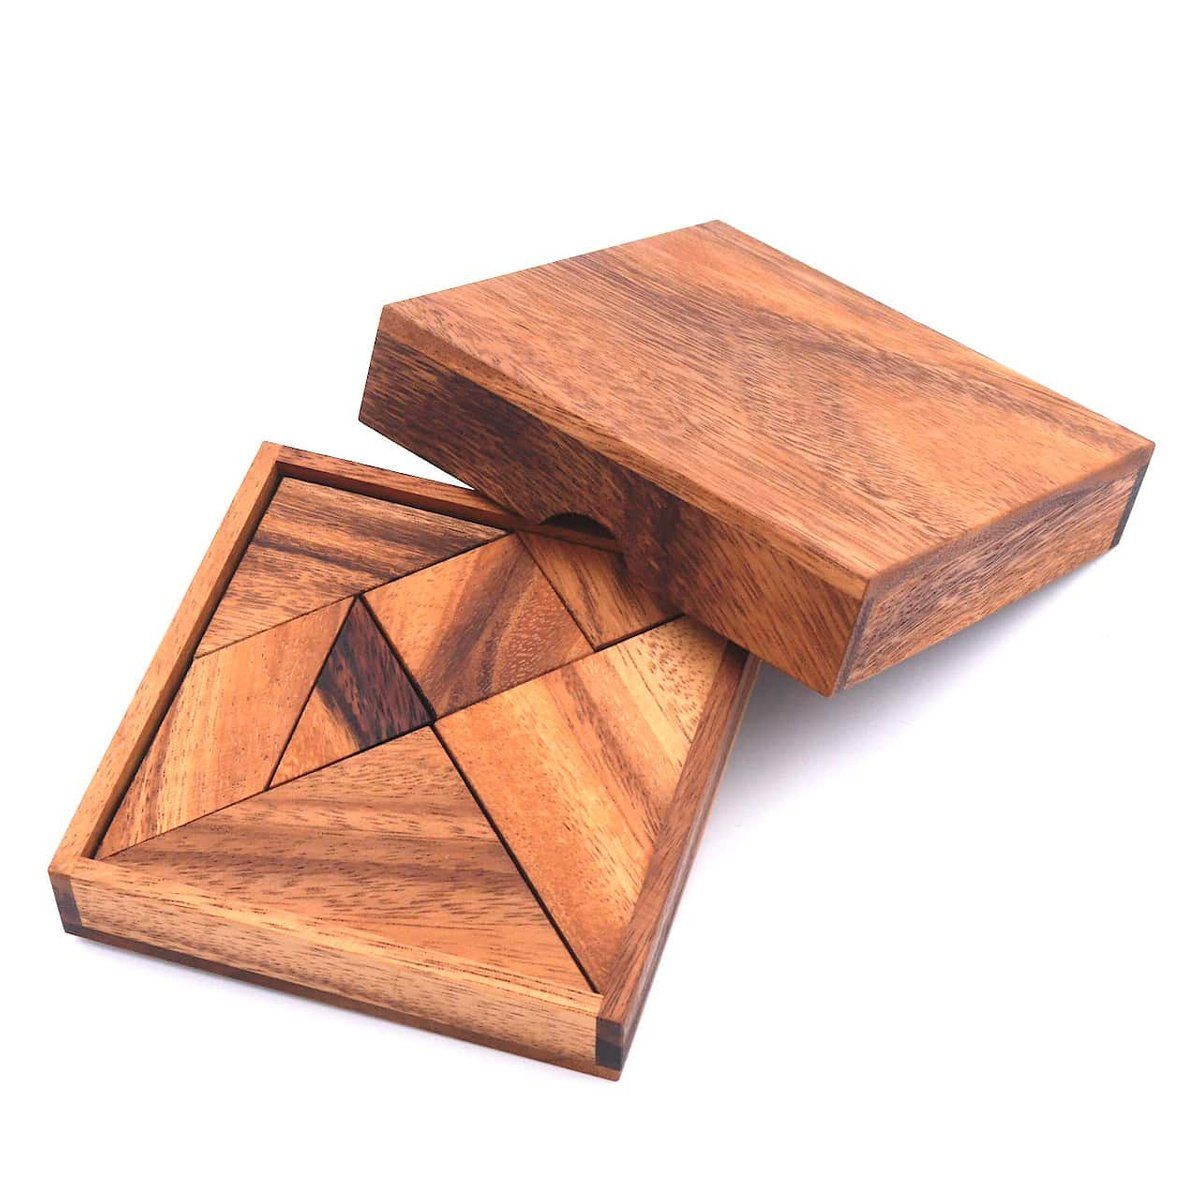 ROMBOL Denkspiele Spiel, Legespiel Tangram - das älteste und variantenreichste Legespiel der Welt, Holzspiel